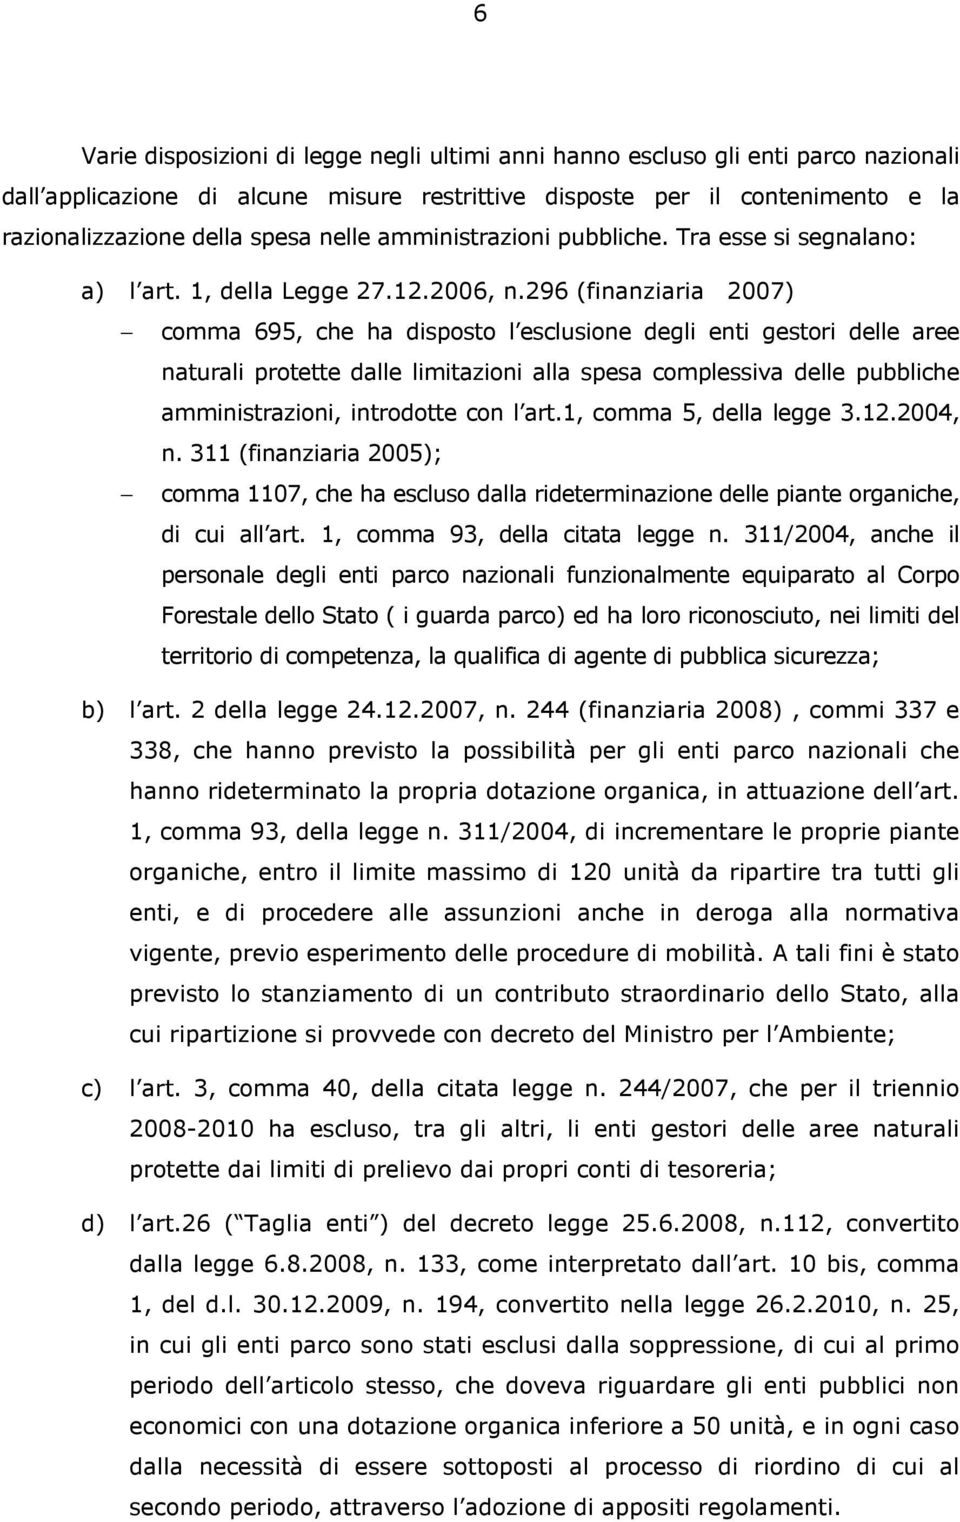 296 (finanziaria 2007) comma 695, che ha disposto l esclusione degli enti gestori delle aree naturali protette dalle limitazioni alla spesa complessiva delle pubbliche amministrazioni, introdotte con